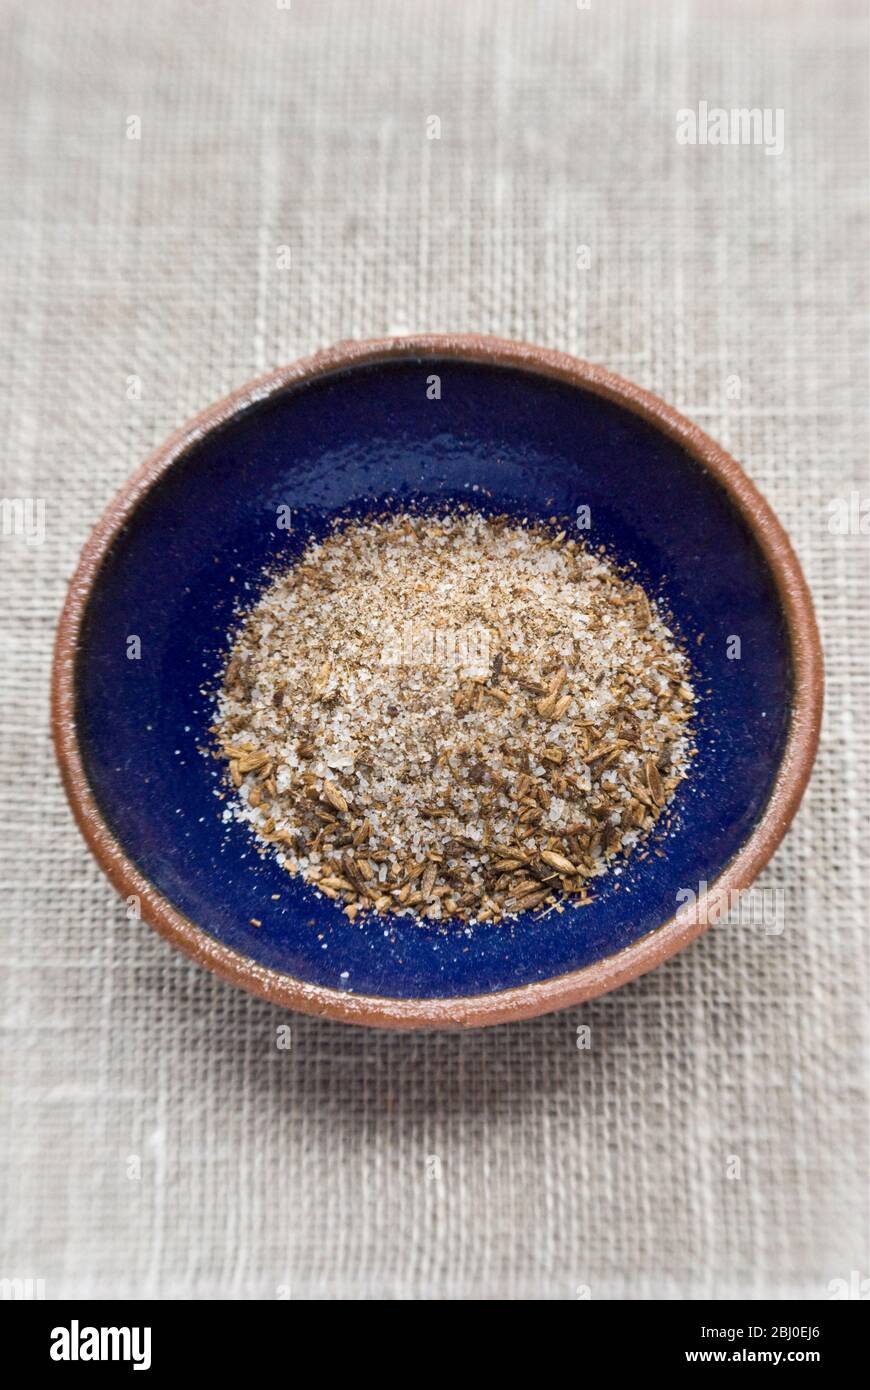 Una miscela di sale marino e semi di cumino tostati e schiacciati, un condimento popolare per il cibo Morrocano. - Foto Stock